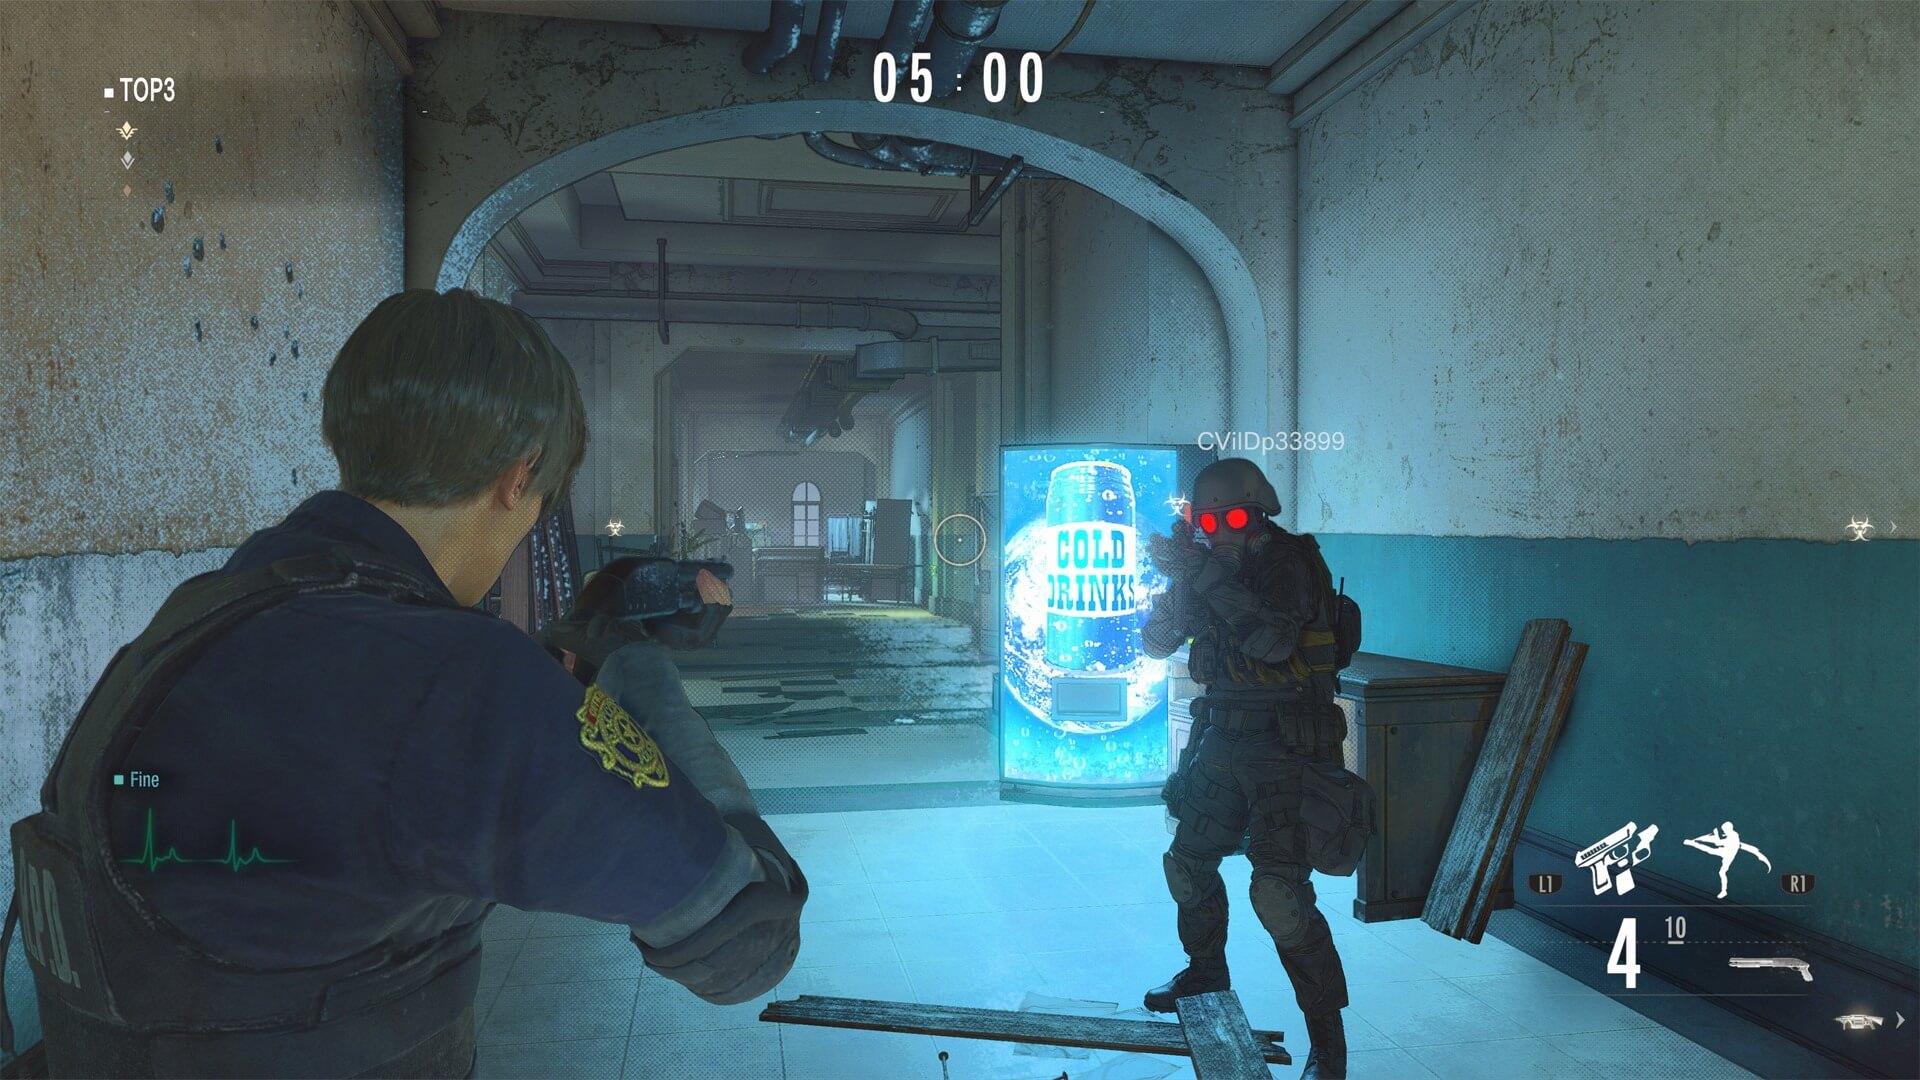 La schermata di gioco, nei panni di uno dei personaggi giocabili, Leon.